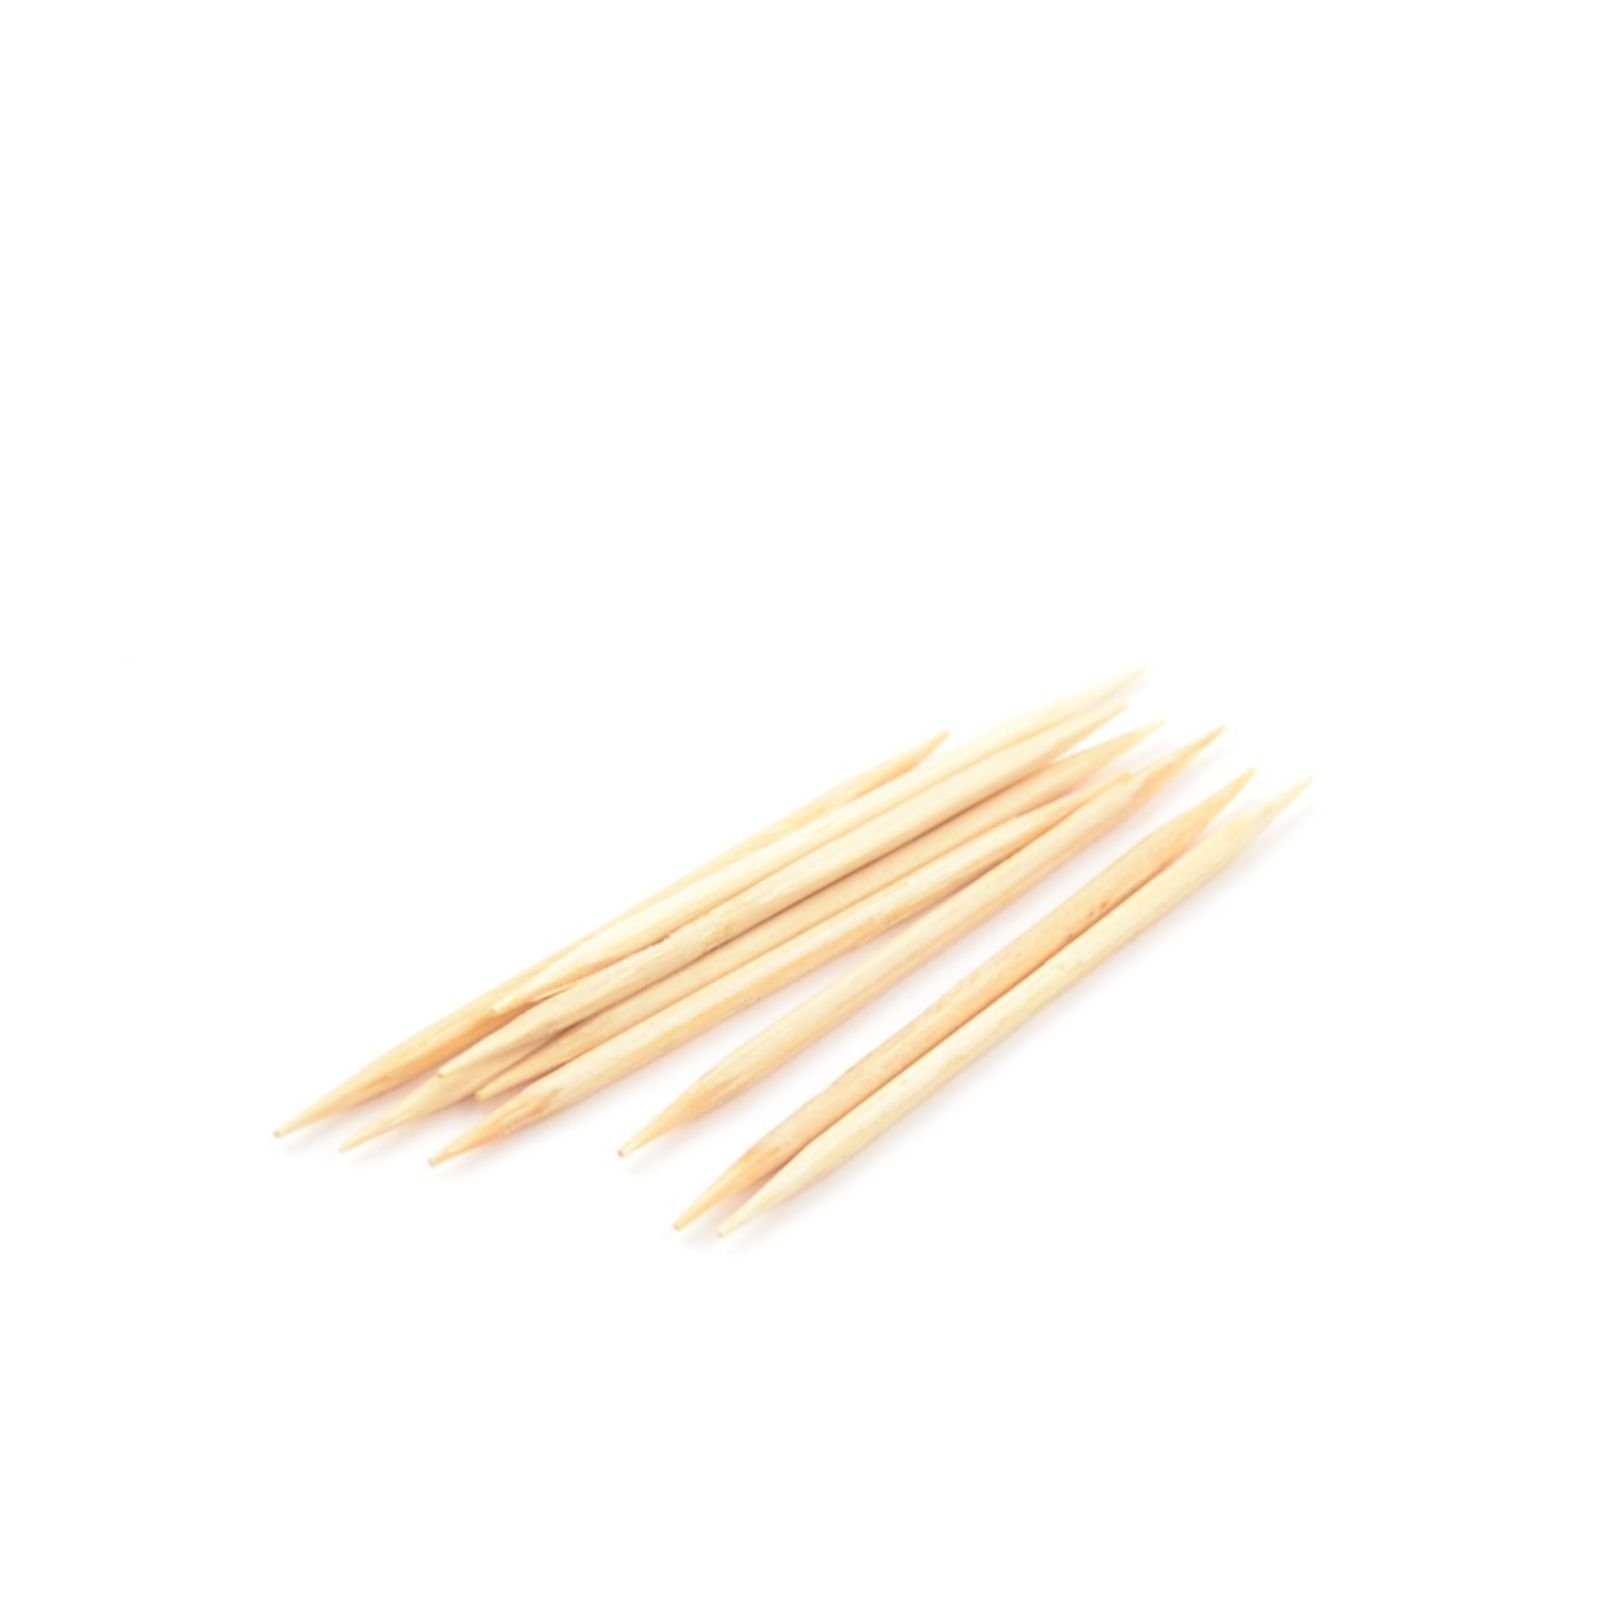 Einweggeschirr-Set 25000 Stück Zahnstocher aus Bambus, gehüllt (2 mm), 65 mm rund, einzeln in Papier gehüllt, 2 Spitzen, poliert